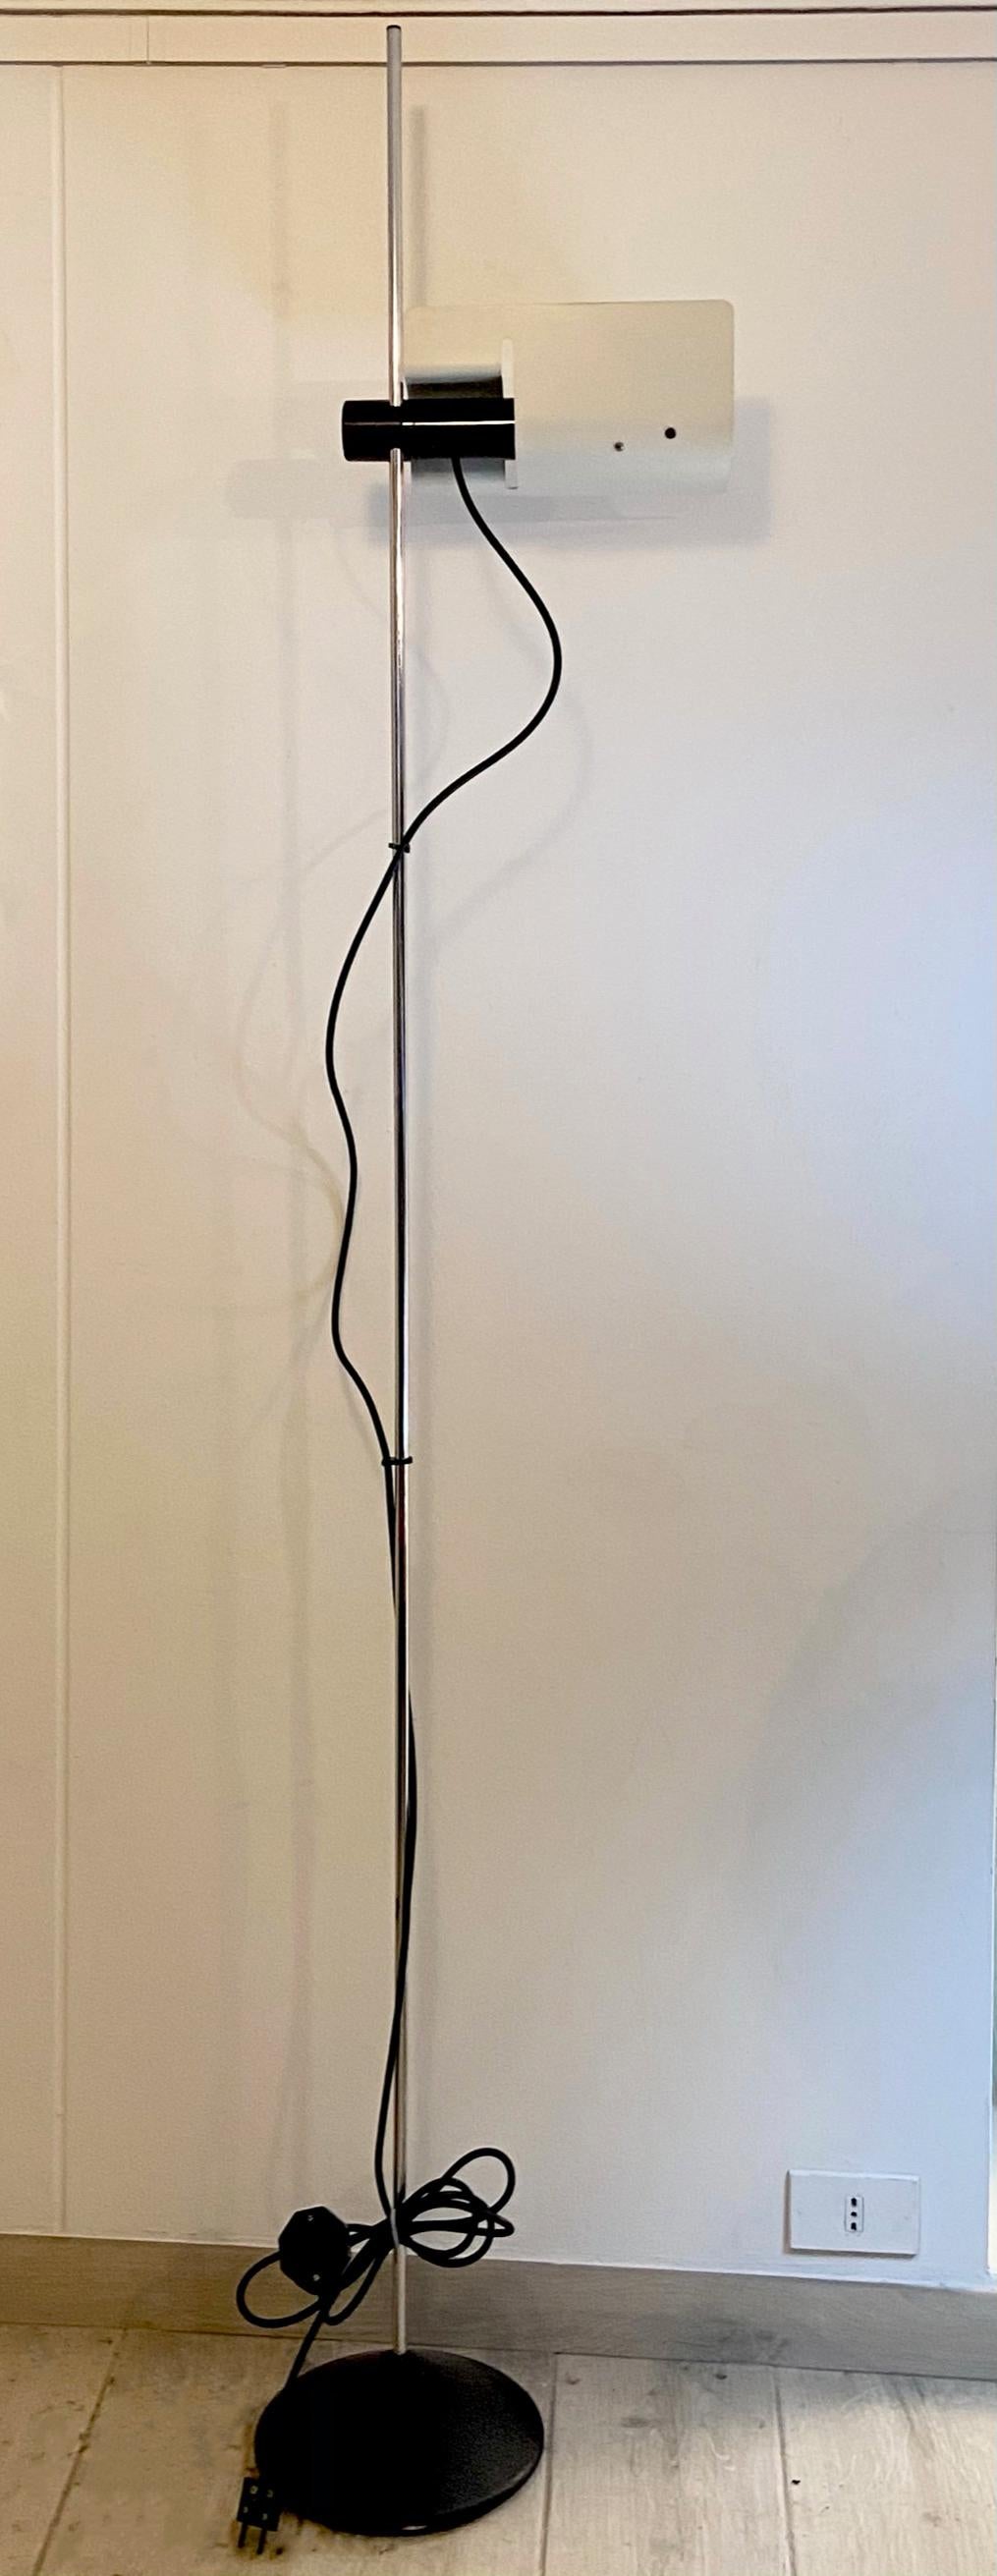 Rare lampadaire par Barbieri & Marianelli pour Tronconi, 1970
Cette lampe très rare est l'une des premières collaborations des architectes italiens Raul Barbieri et Giorgio Marianelli. Il a été produit par la société d'éclairage Tronconi dans les